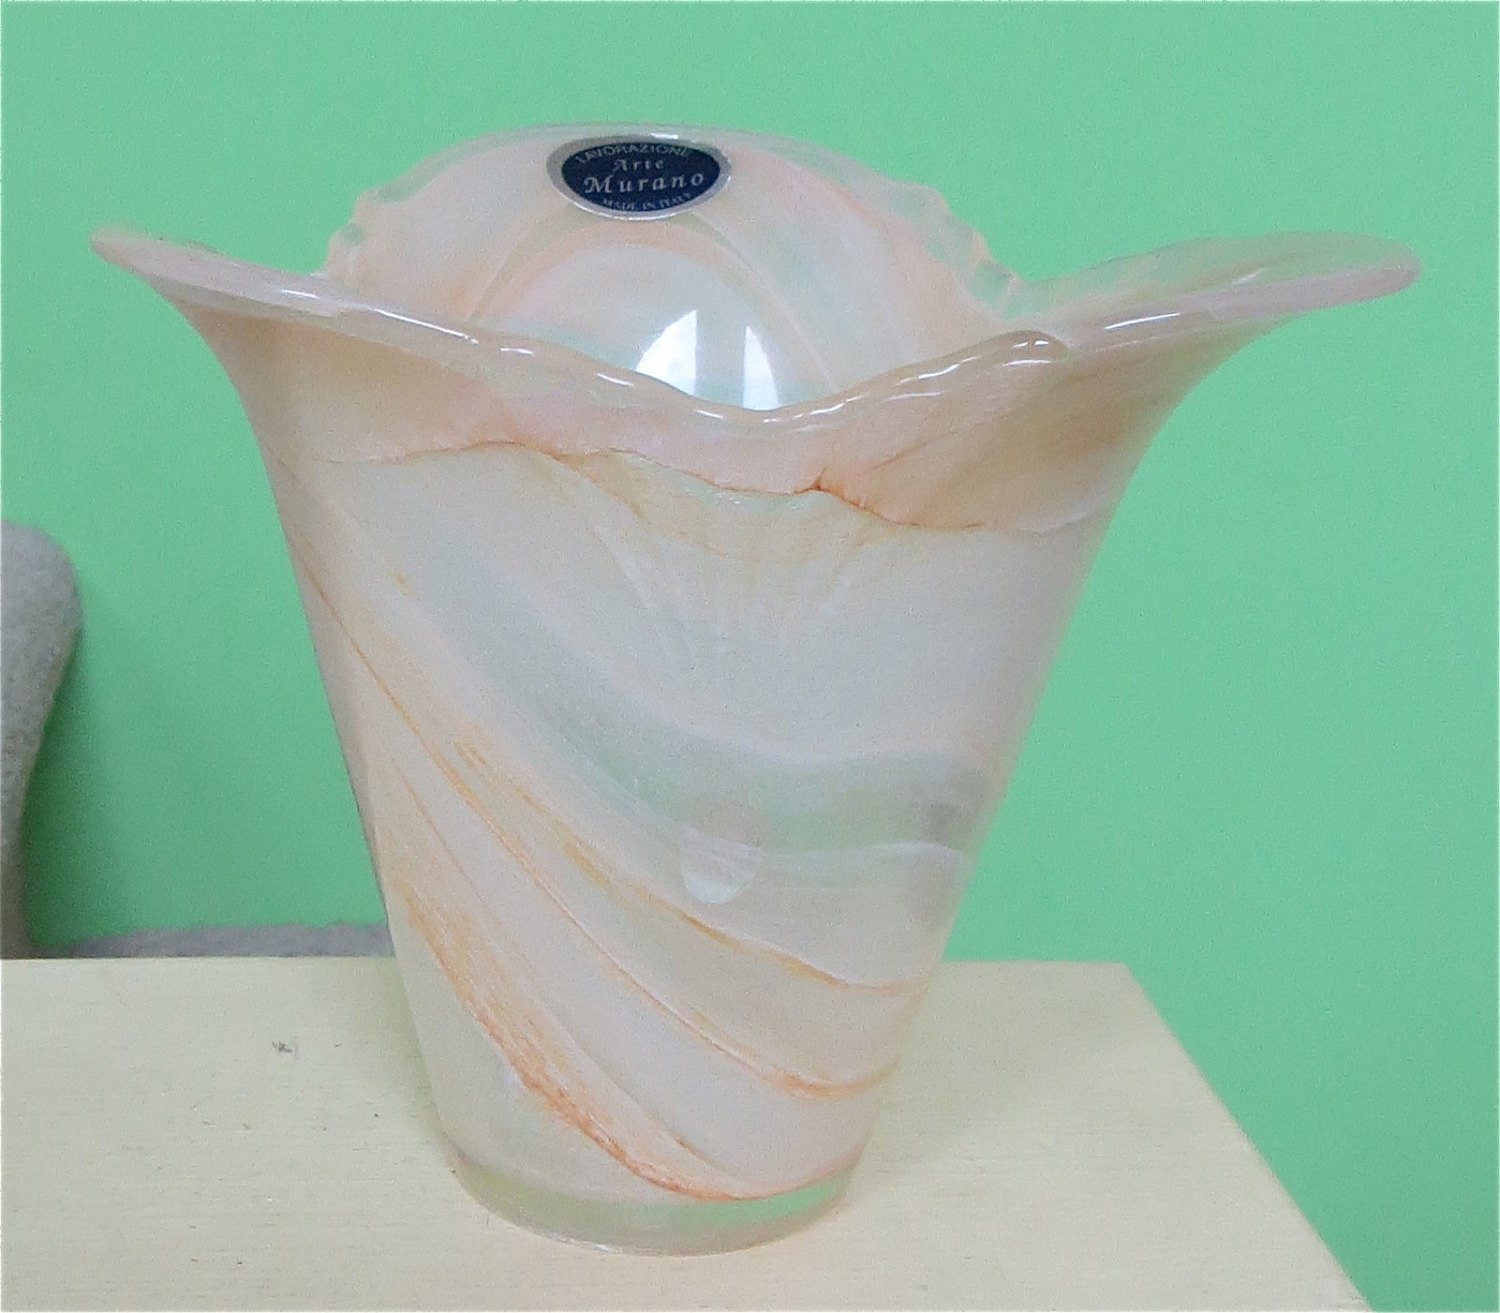 19 Stylish Lavorazione Arte Murano Glass Vase 2024 free download lavorazione arte murano glass vase of 1950s murano art glass vase lavorazione arte murano italy etsy for dc29fc294c28ezoom